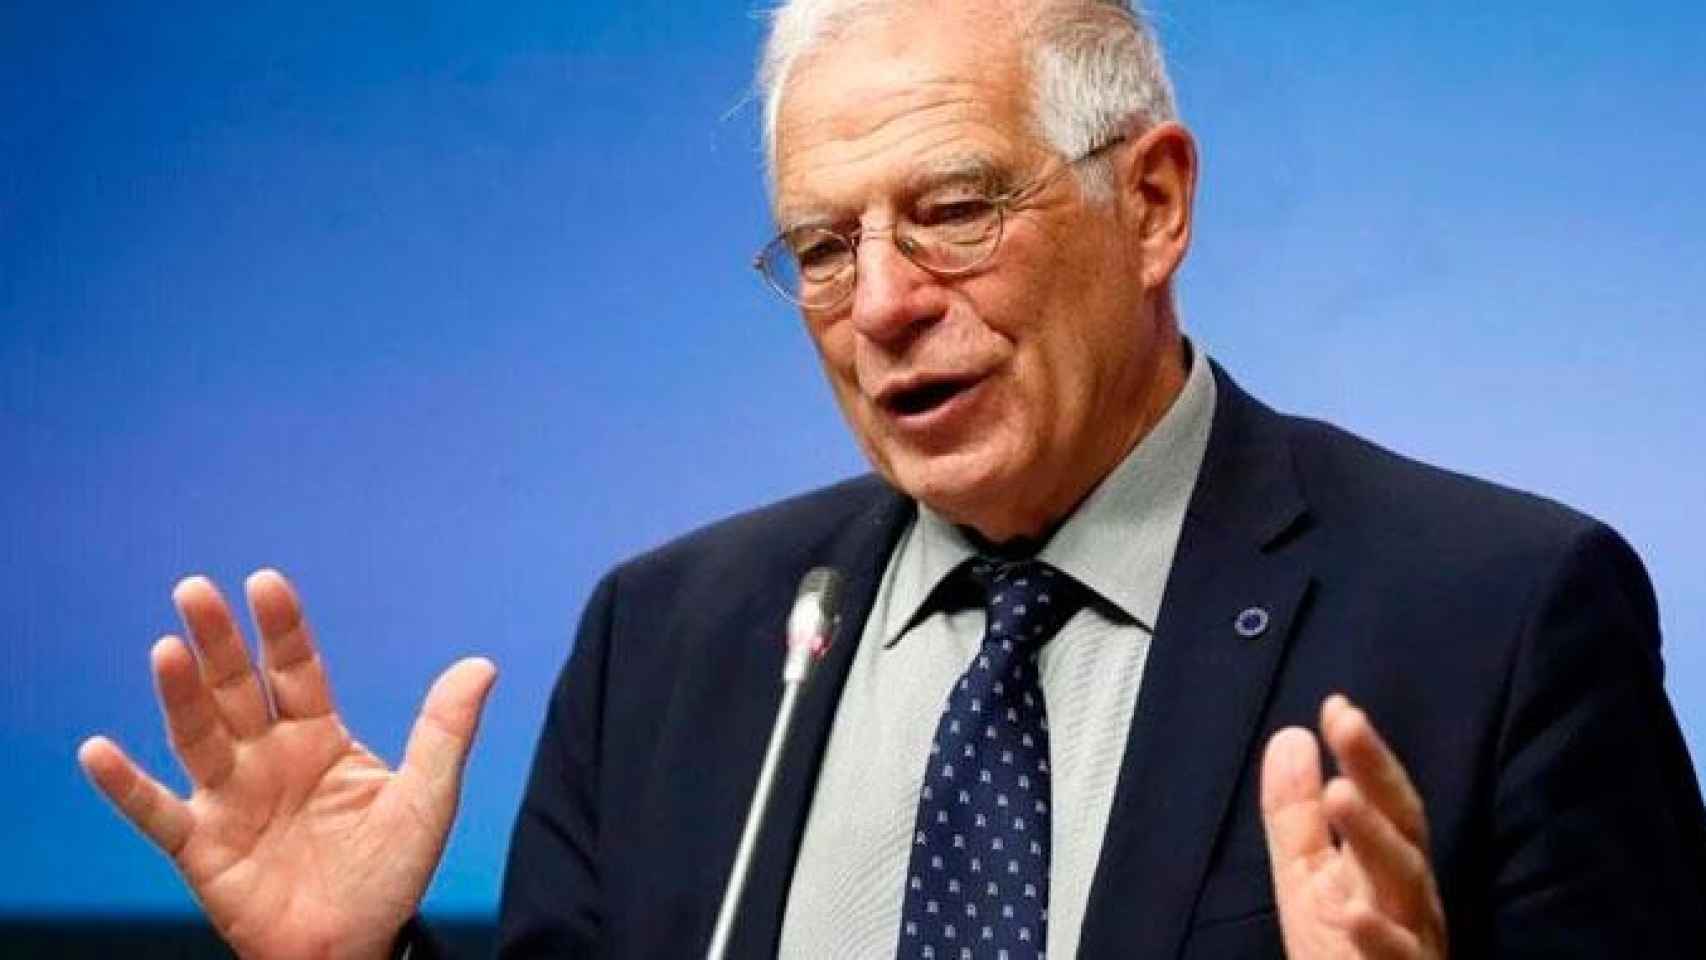 Josep Borrell, ministro de Exteriores, en una comparecencia pública anterior / CG